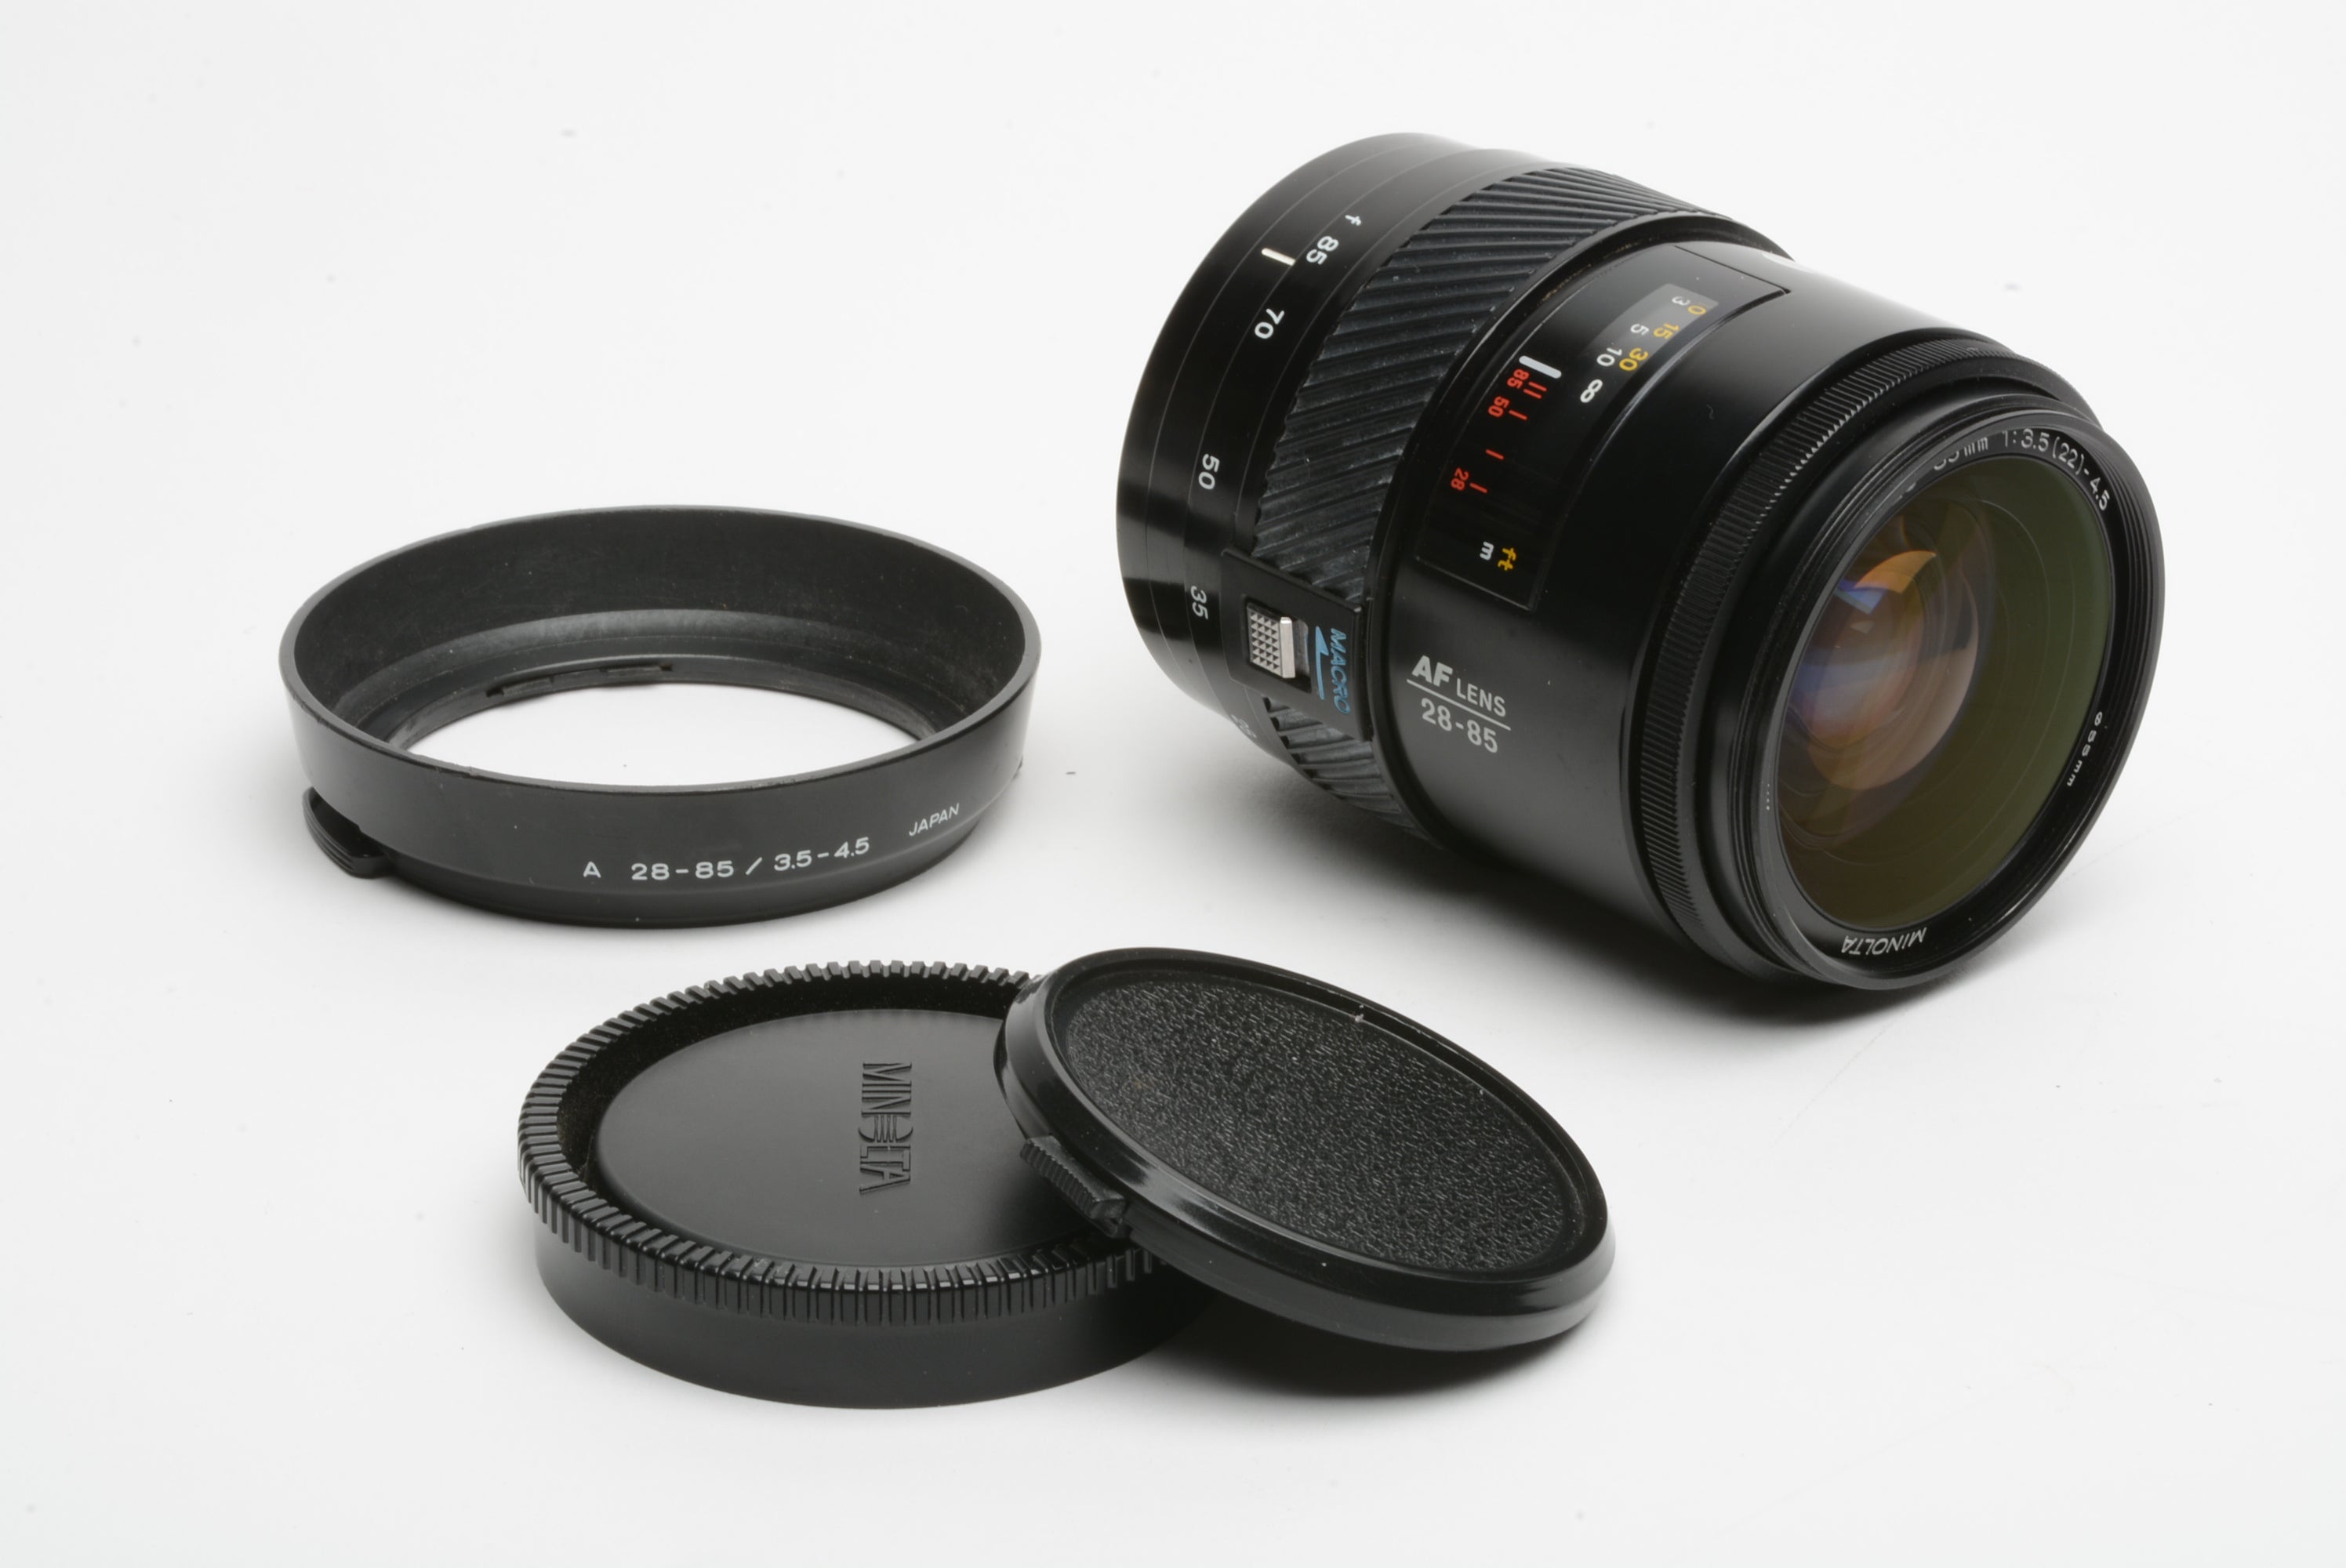 Minolta Maxxum AF 28-85mm f3.5-4.5 zoom lens